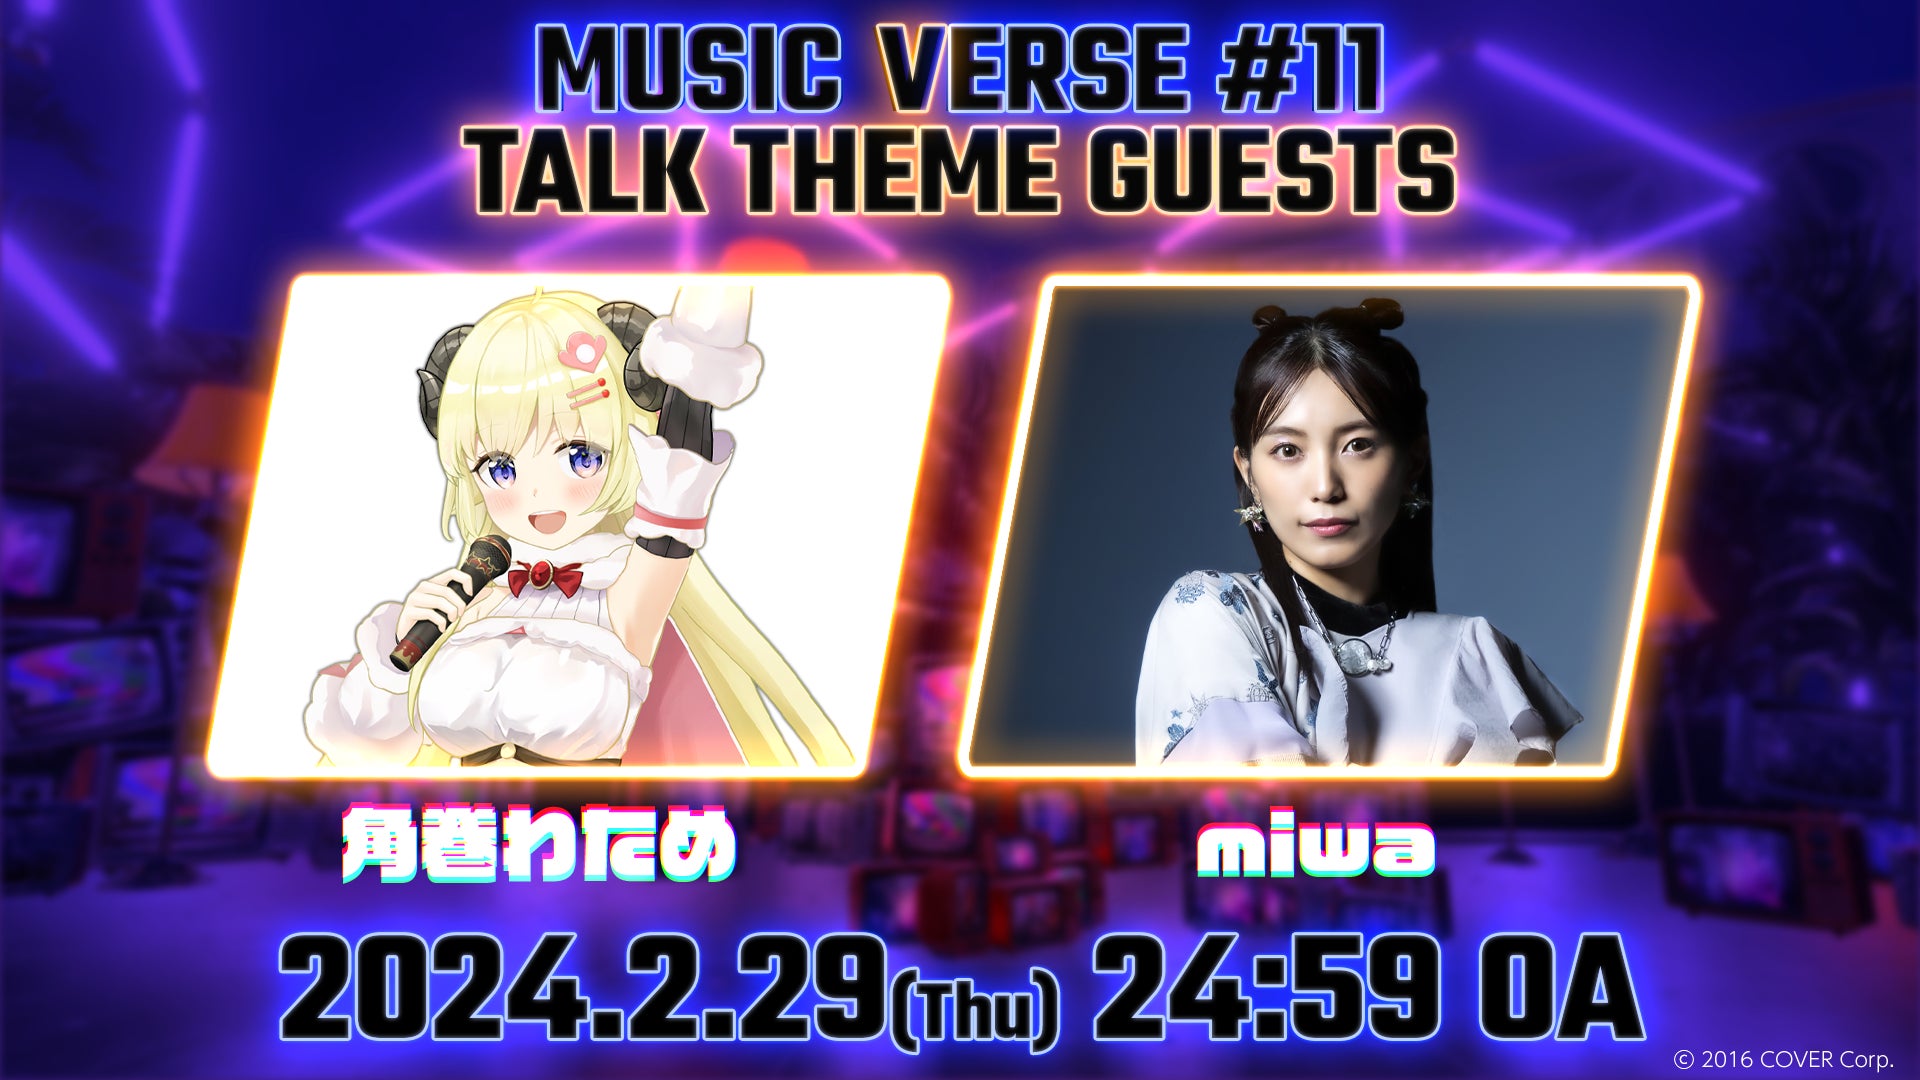 メタバース空間での地上波音楽番組「MUSIC VERSE #11」が日本テレビで2/29（木）24:59より放送されます